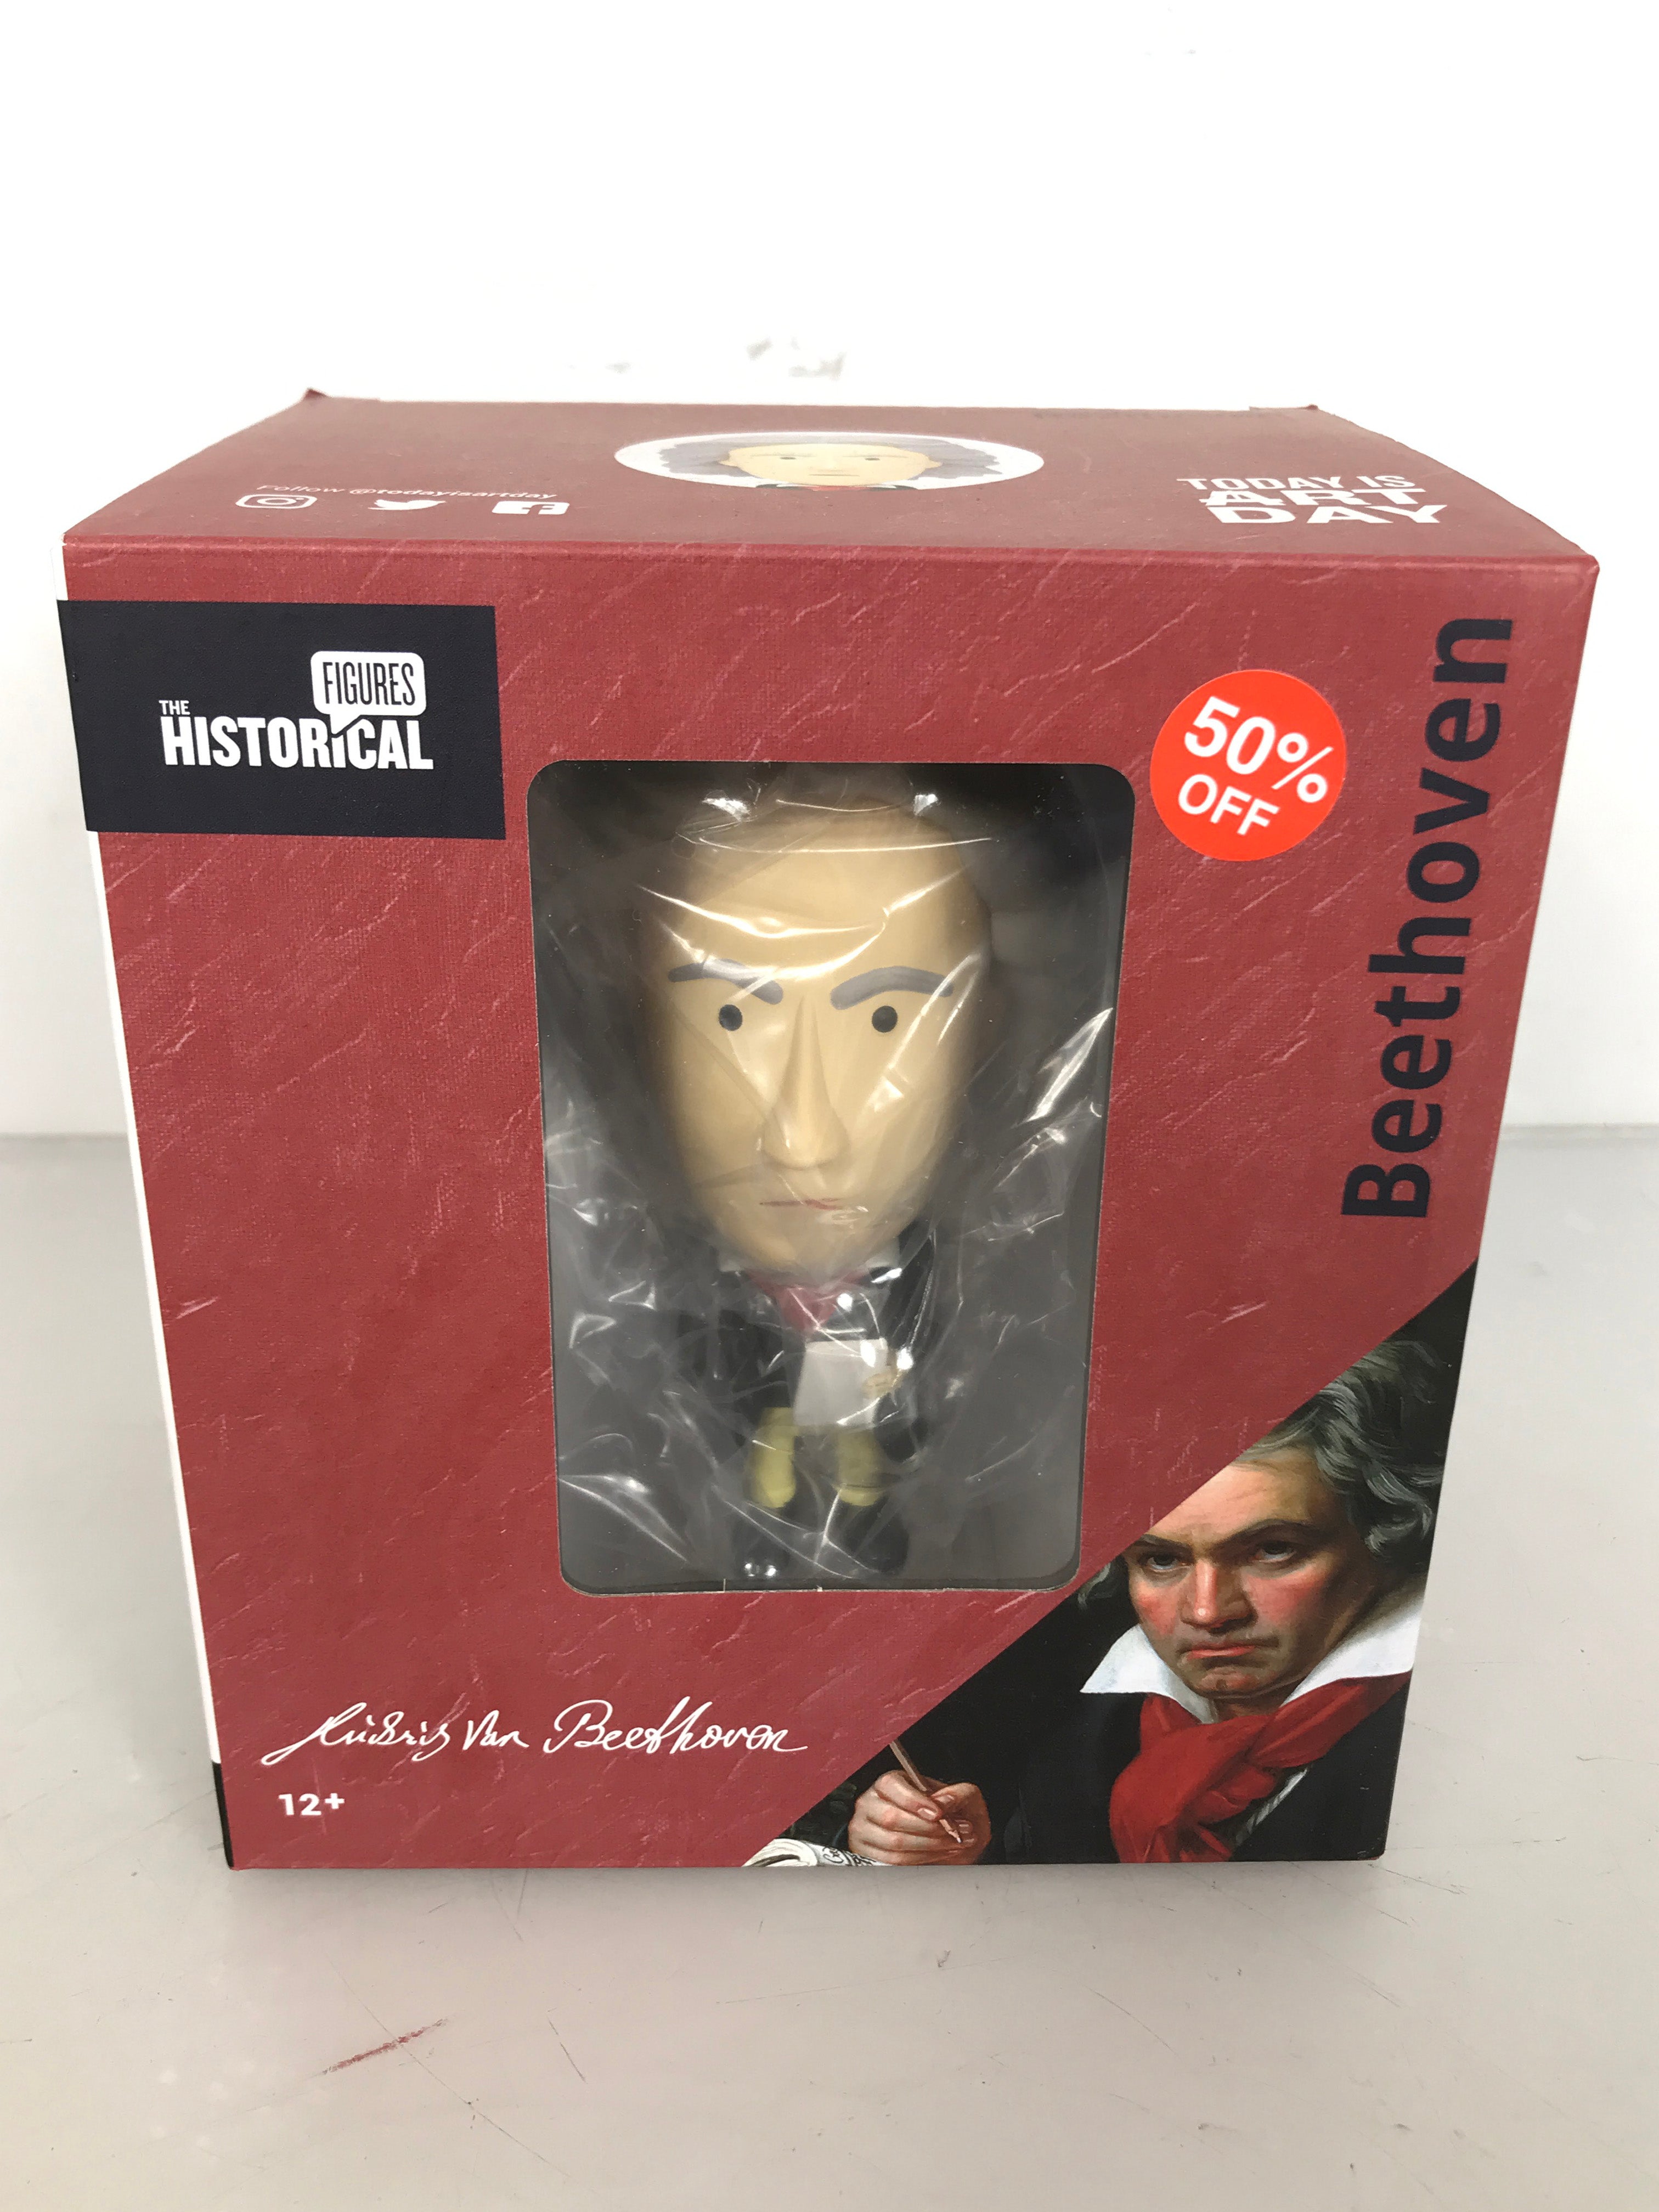 The Historical Figures Ludwig van Beethoven Figurine